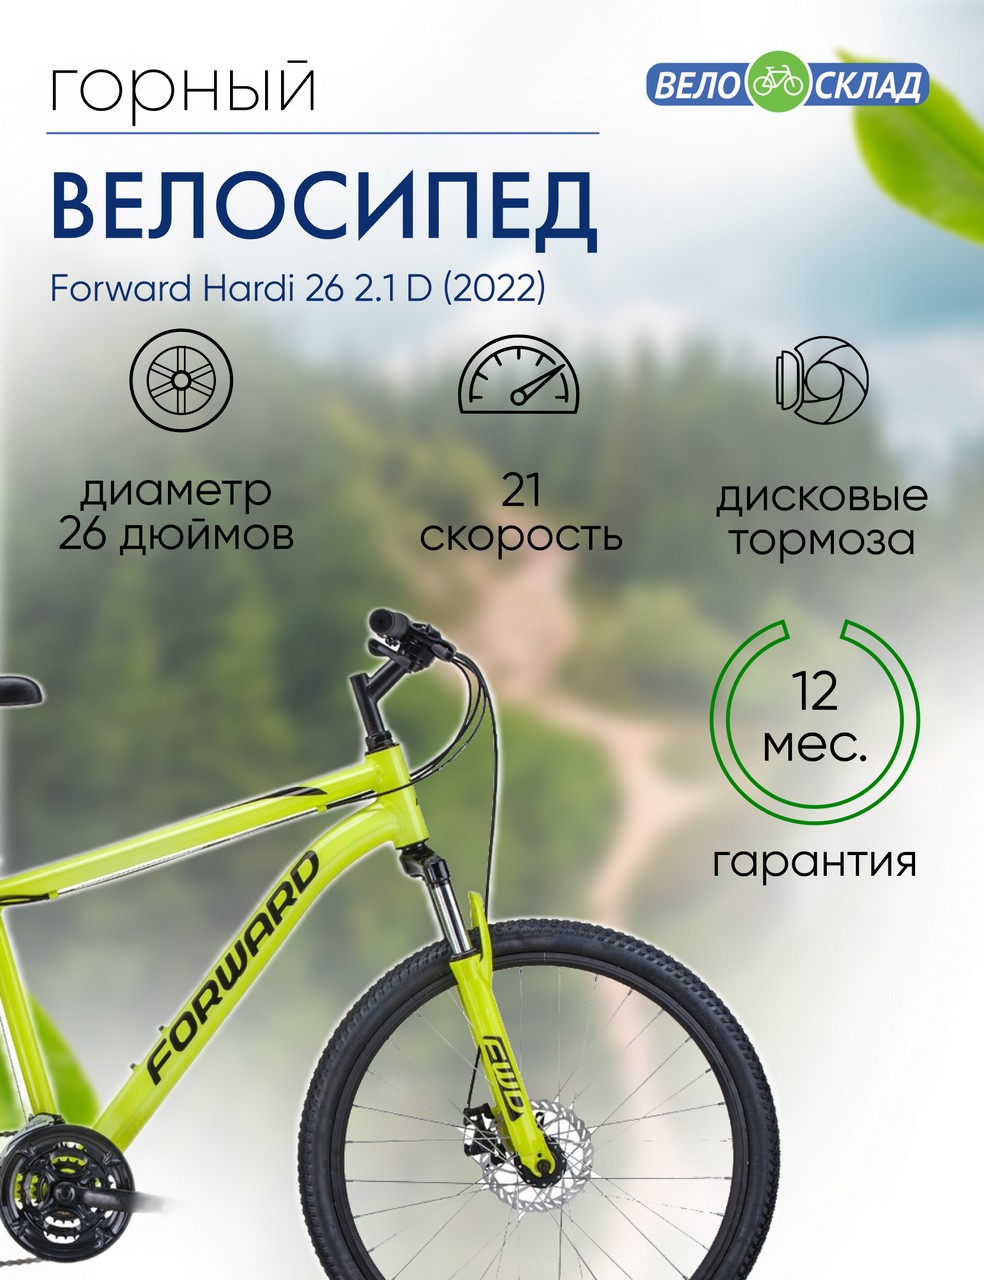 фото Горный велосипед forward hardi 26 2.1 d, год 2022, цвет желтый-черный, ростовка 18